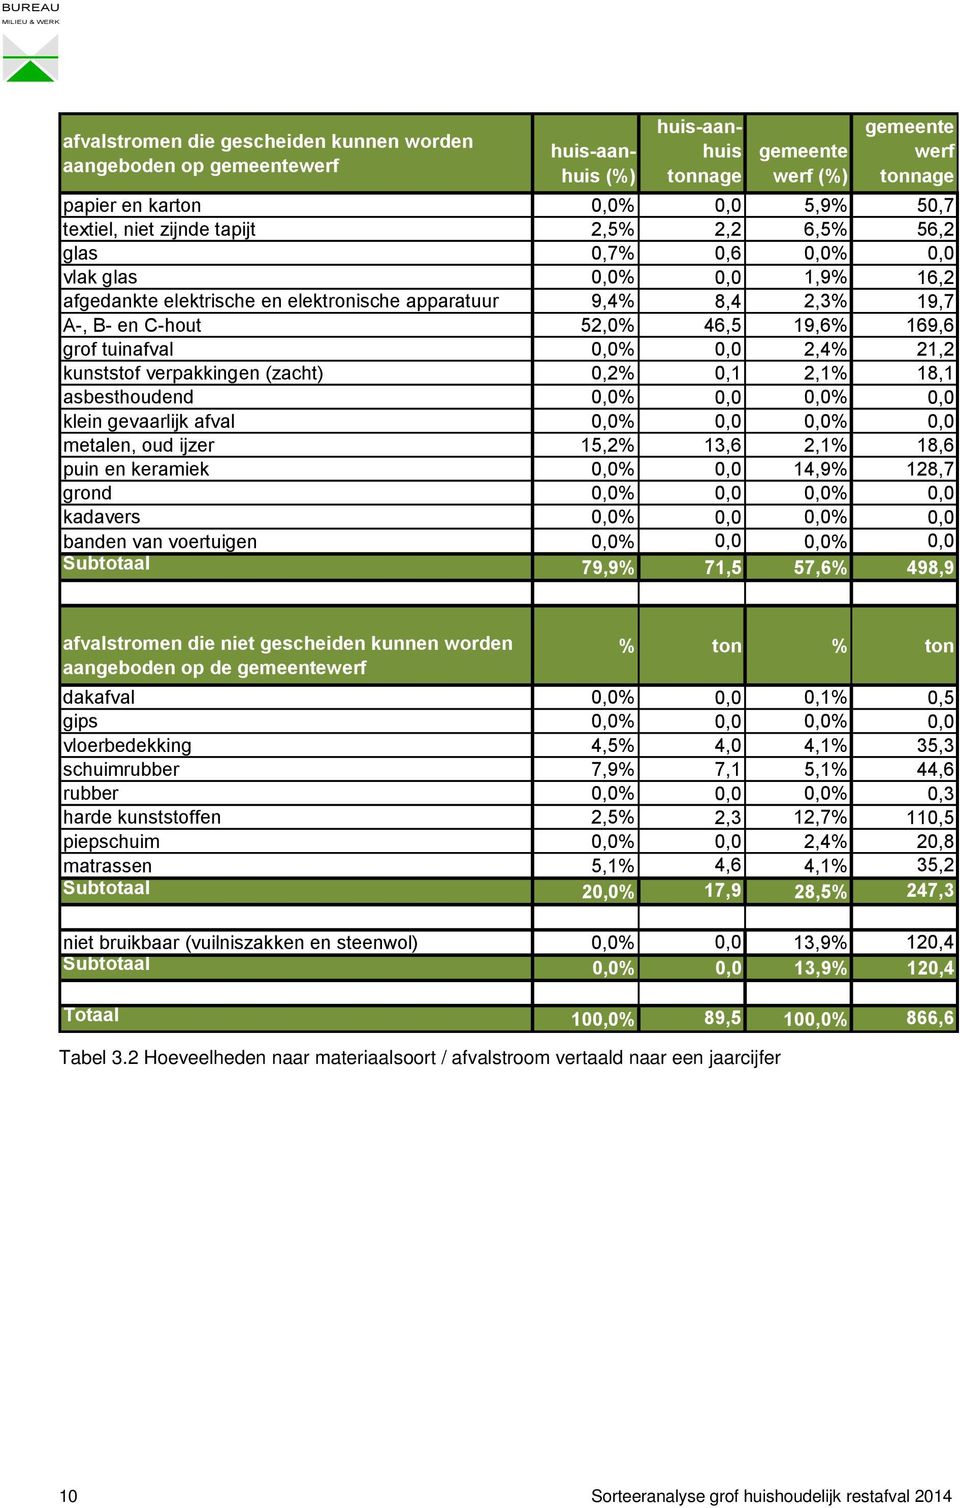 tuinafval 0,0% 0,0 2,4% 21,2 kunststof verpakkingen (zacht) 0,2% 0,1 2,1% 18,1 asbesthoudend 0,0% 0,0 0,0% 0,0 klein gevaarlijk afval 0,0% 0,0 0,0% 0,0 metalen, oud ijzer 15,2% 13,6 2,1% 18,6 puin en